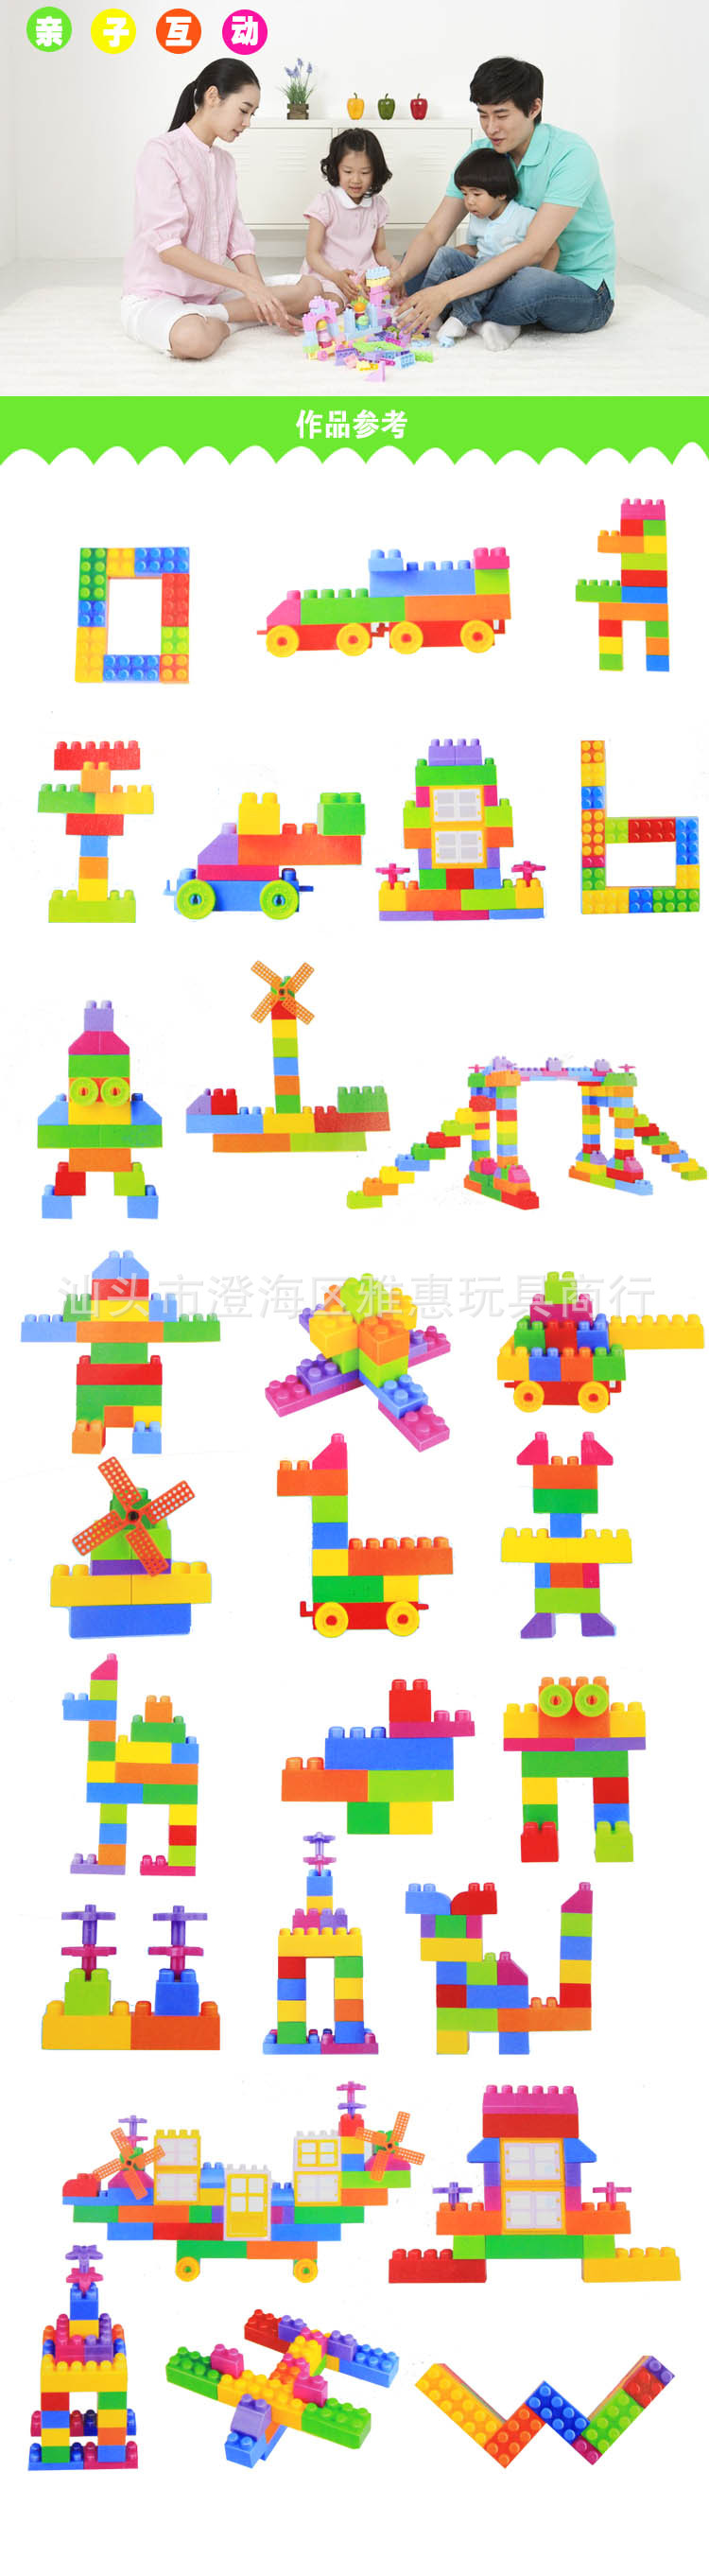 厂价批发儿童益智塑料玩具 94粒收纳箱包装大颗粒积木